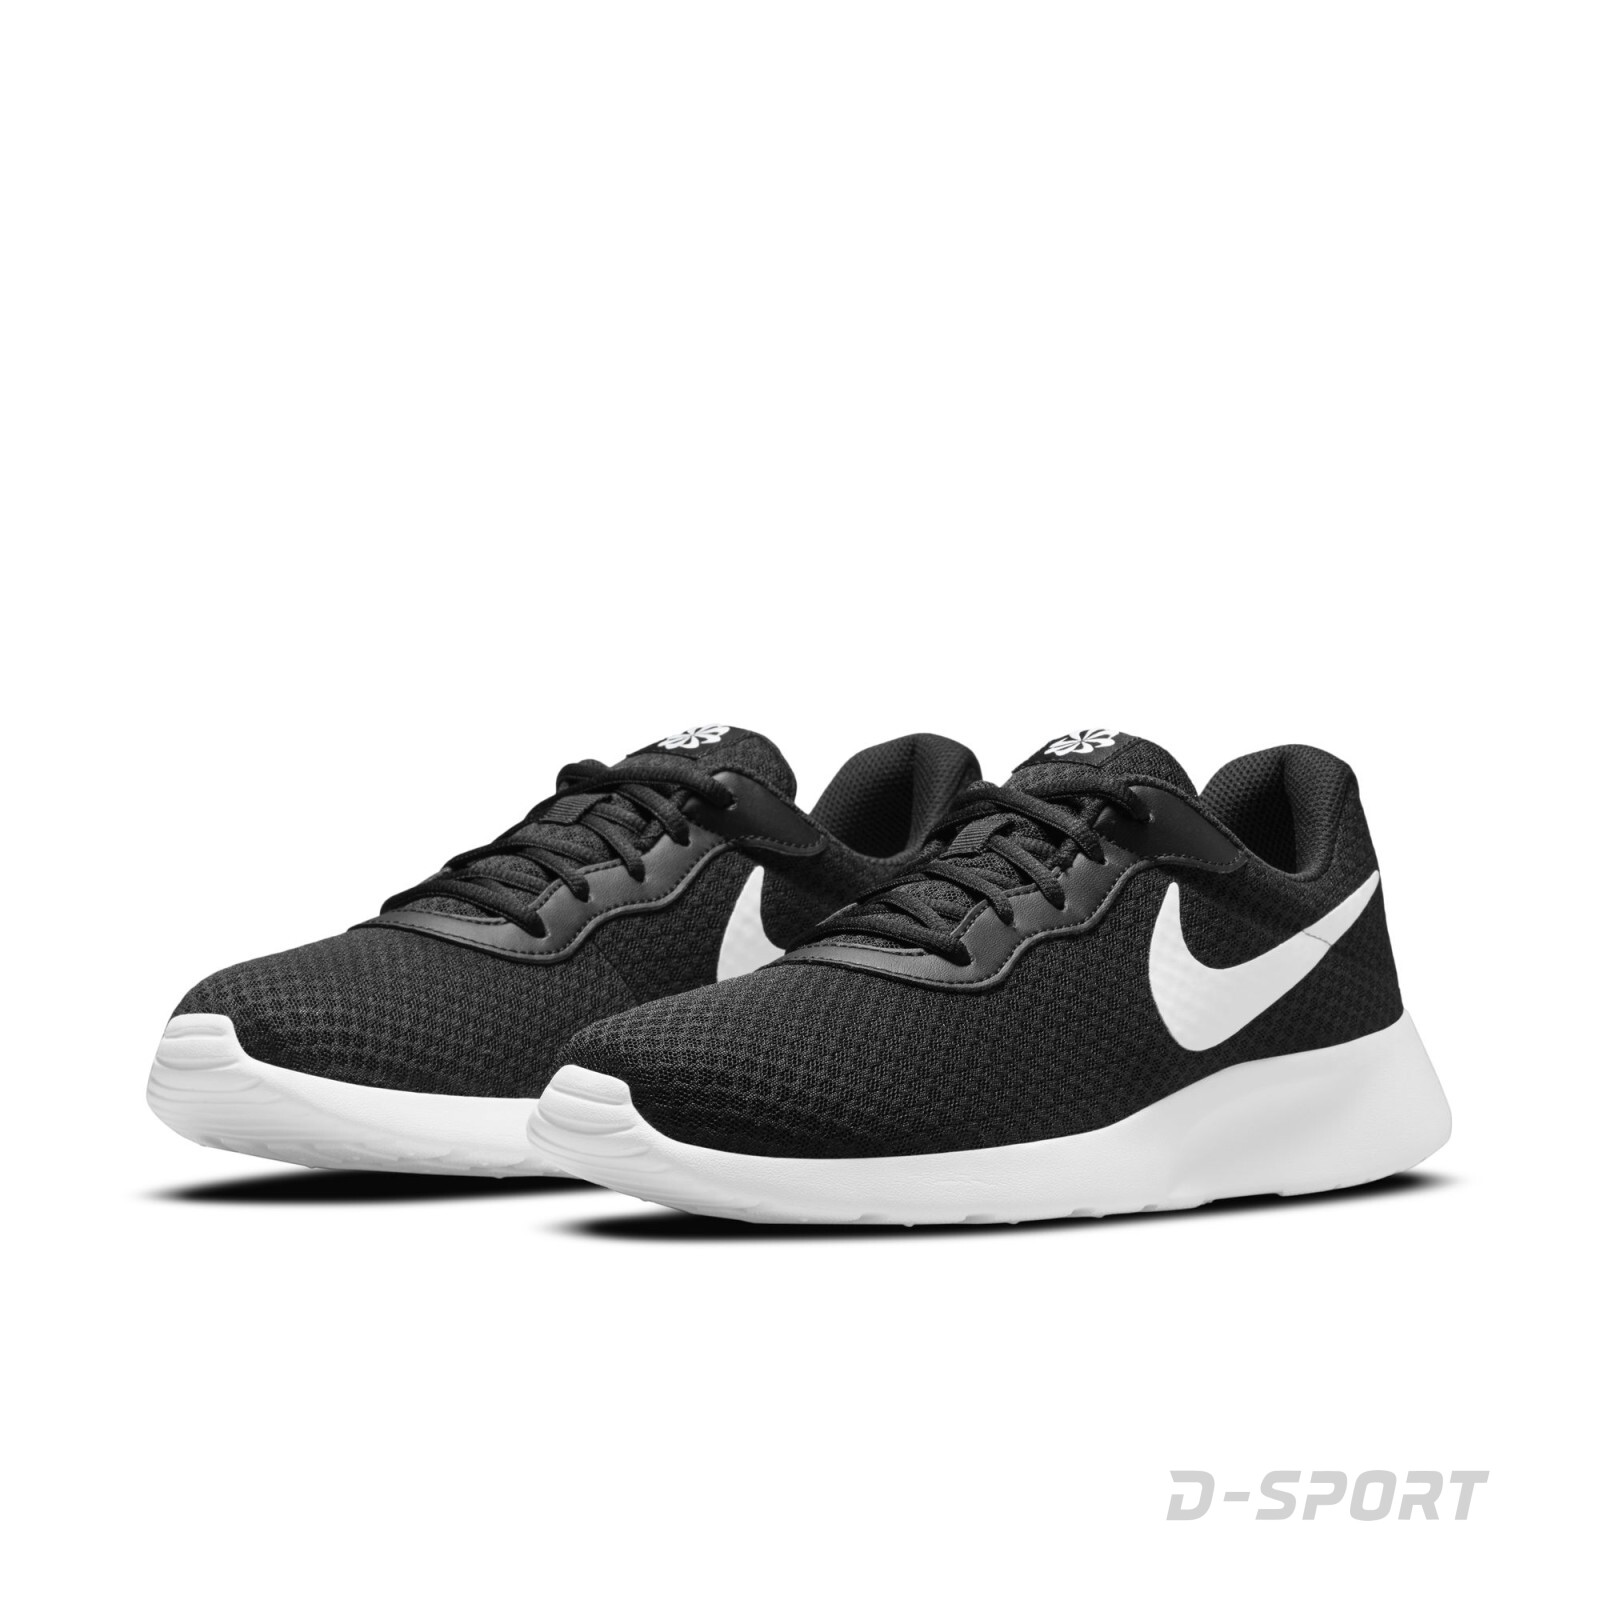 Nike Tanjun